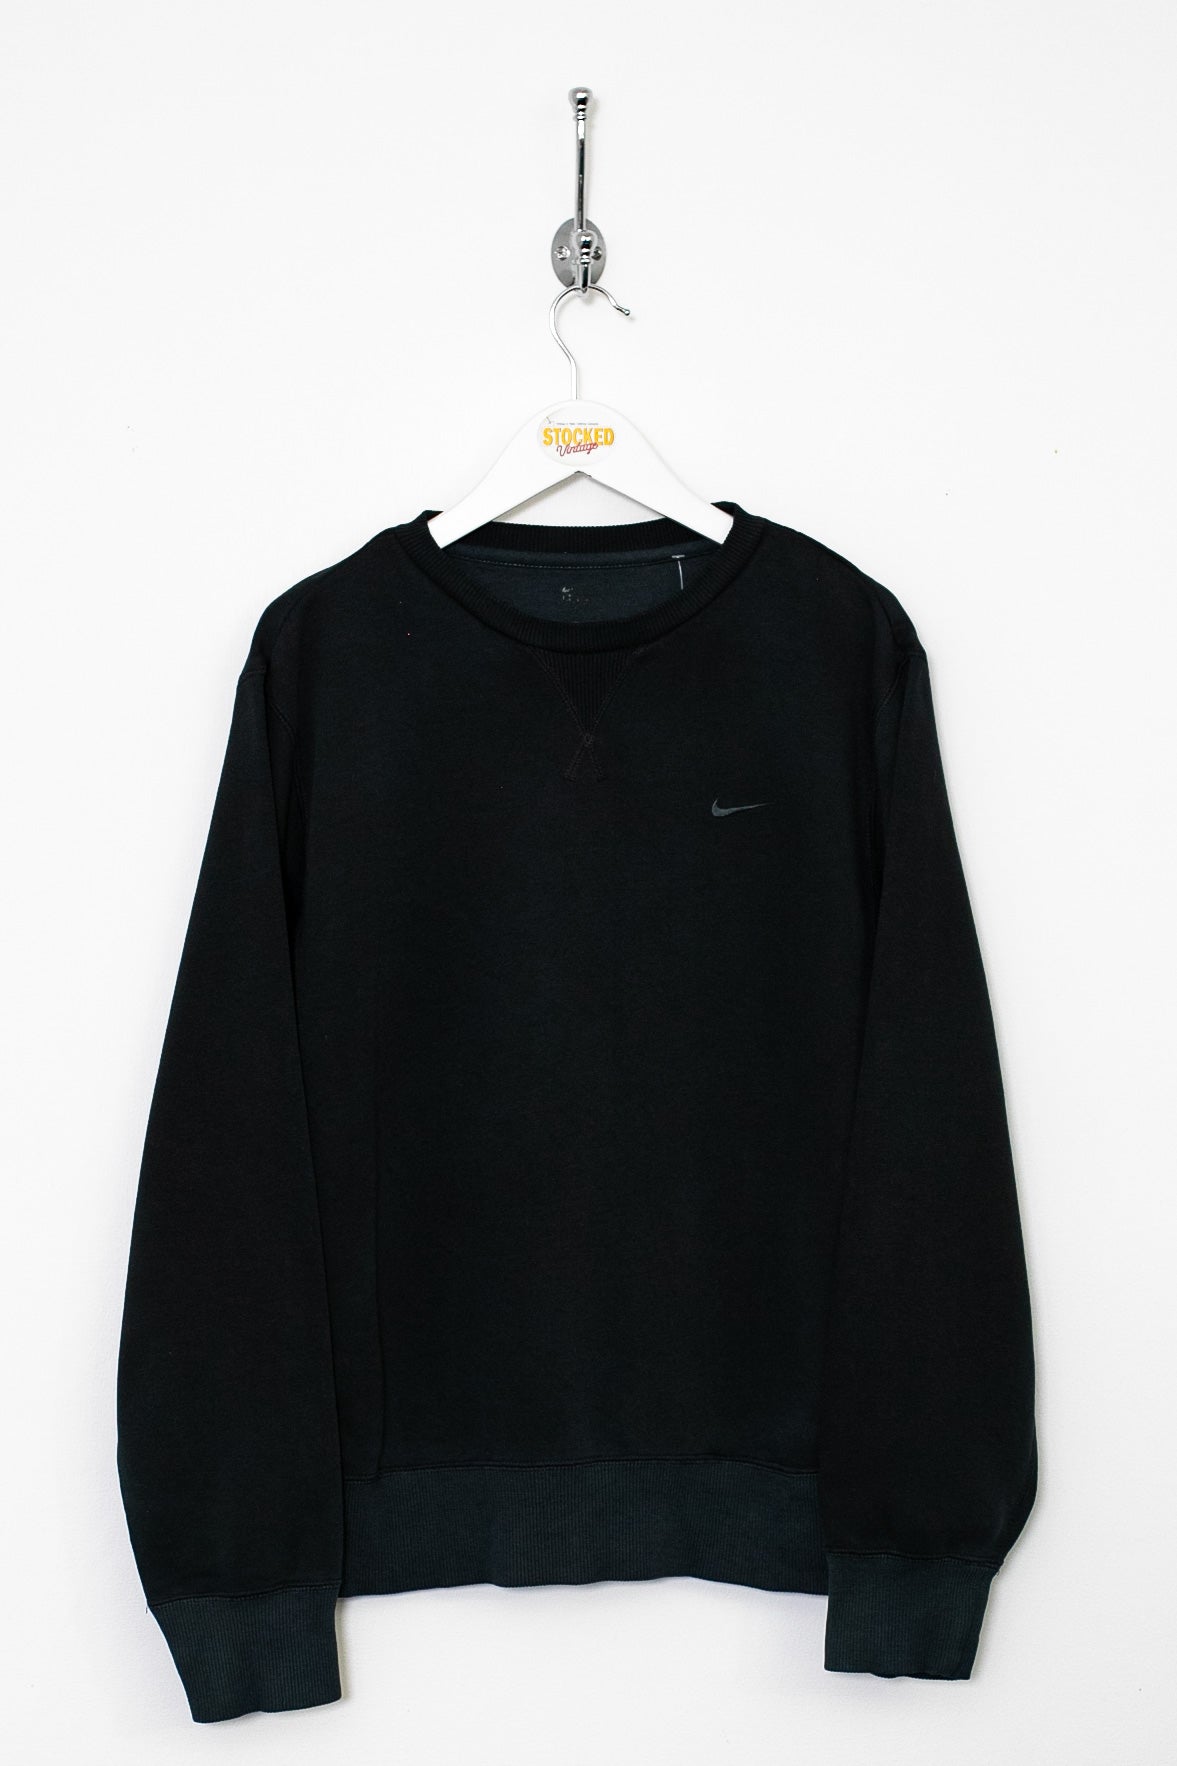 Nike Sweatshirt (S)